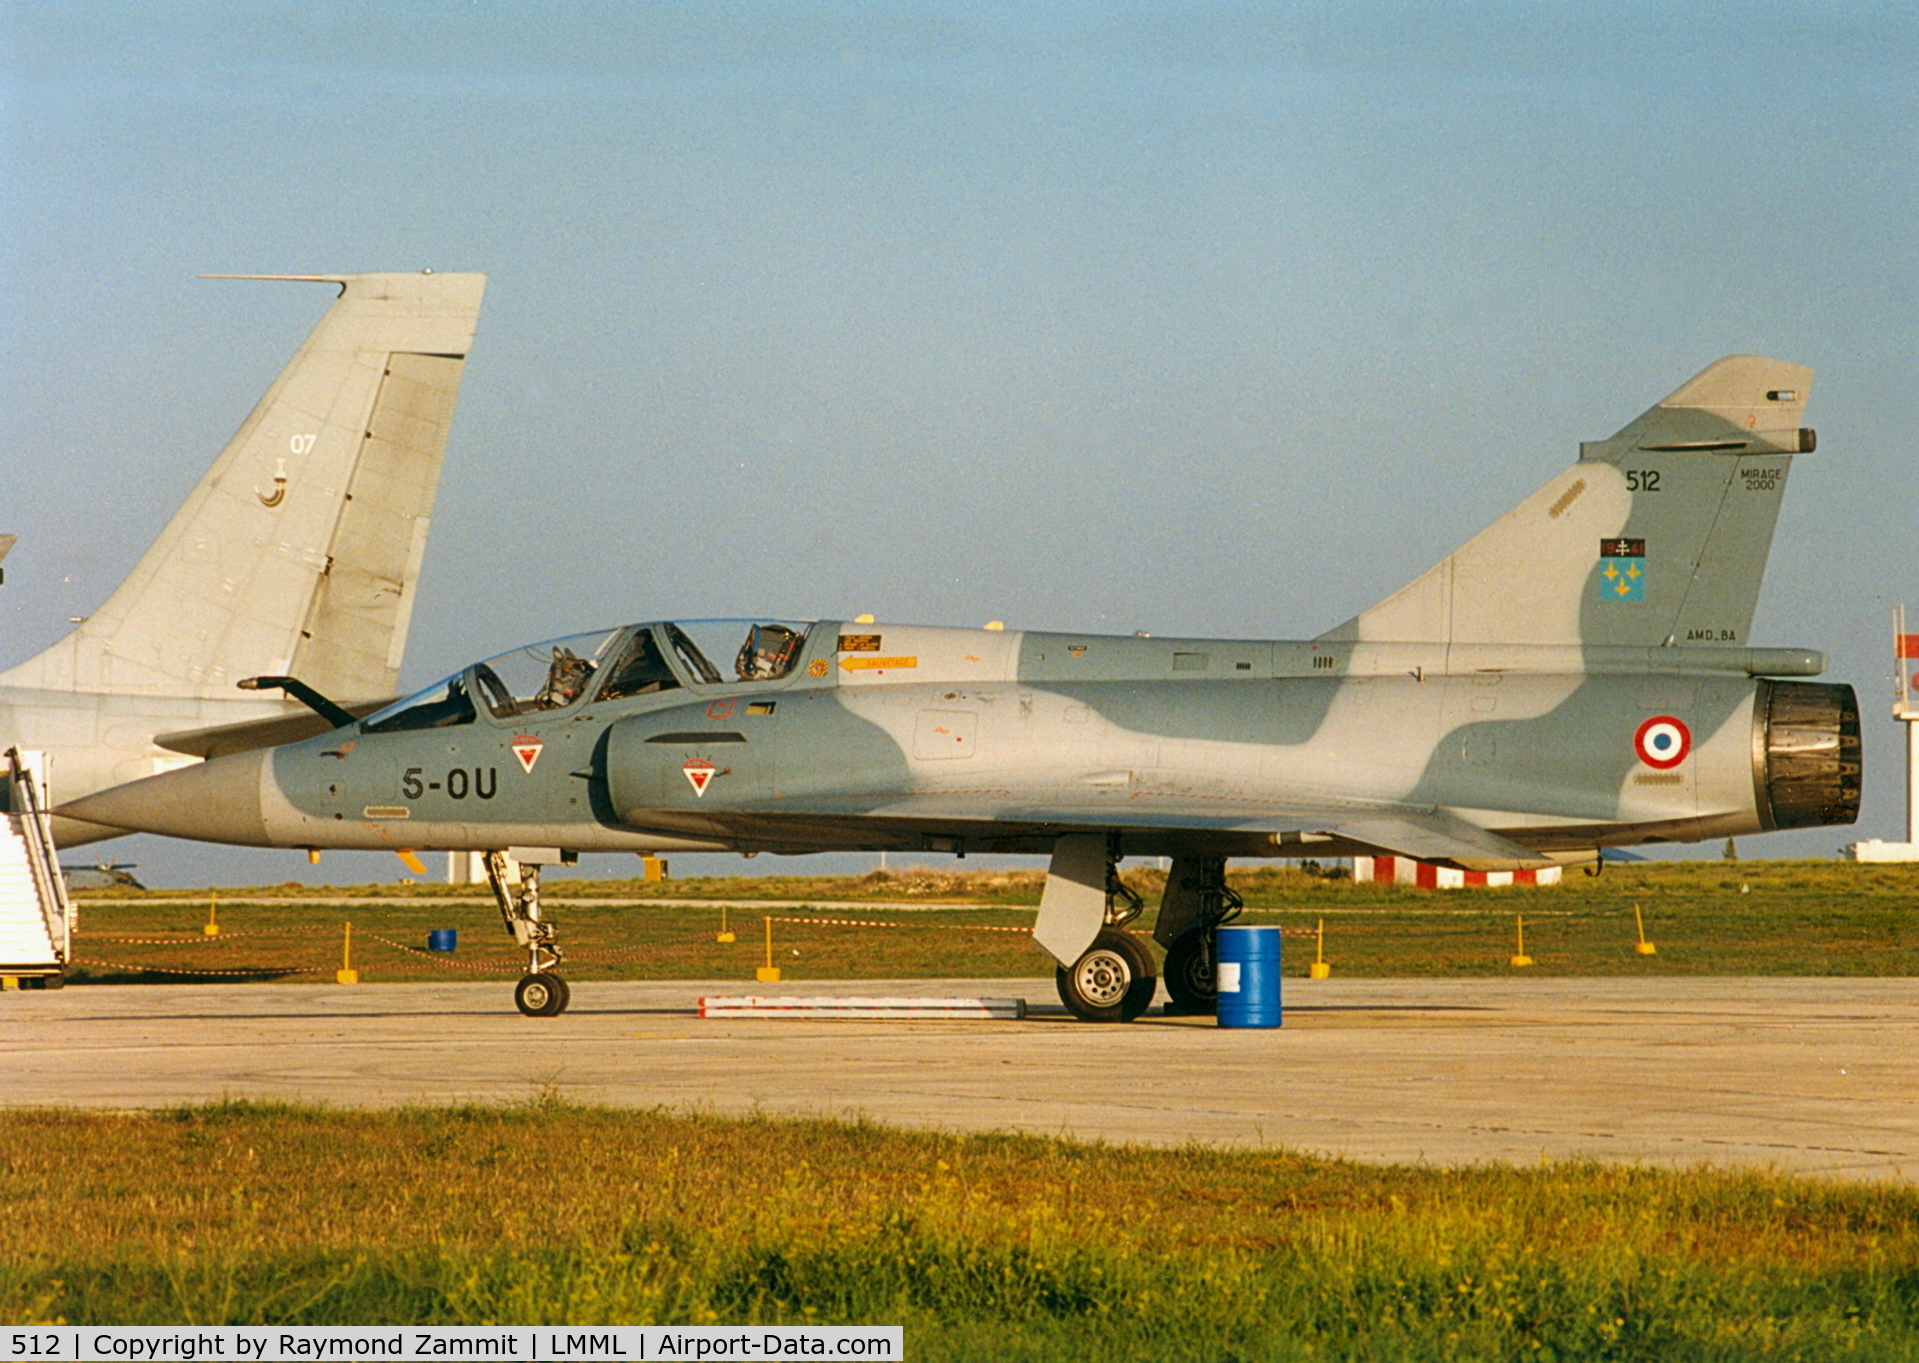 512, Dassault Mirage 2000B C/N 145, Dassault Mirage 2000 512/5-OU French Air Force